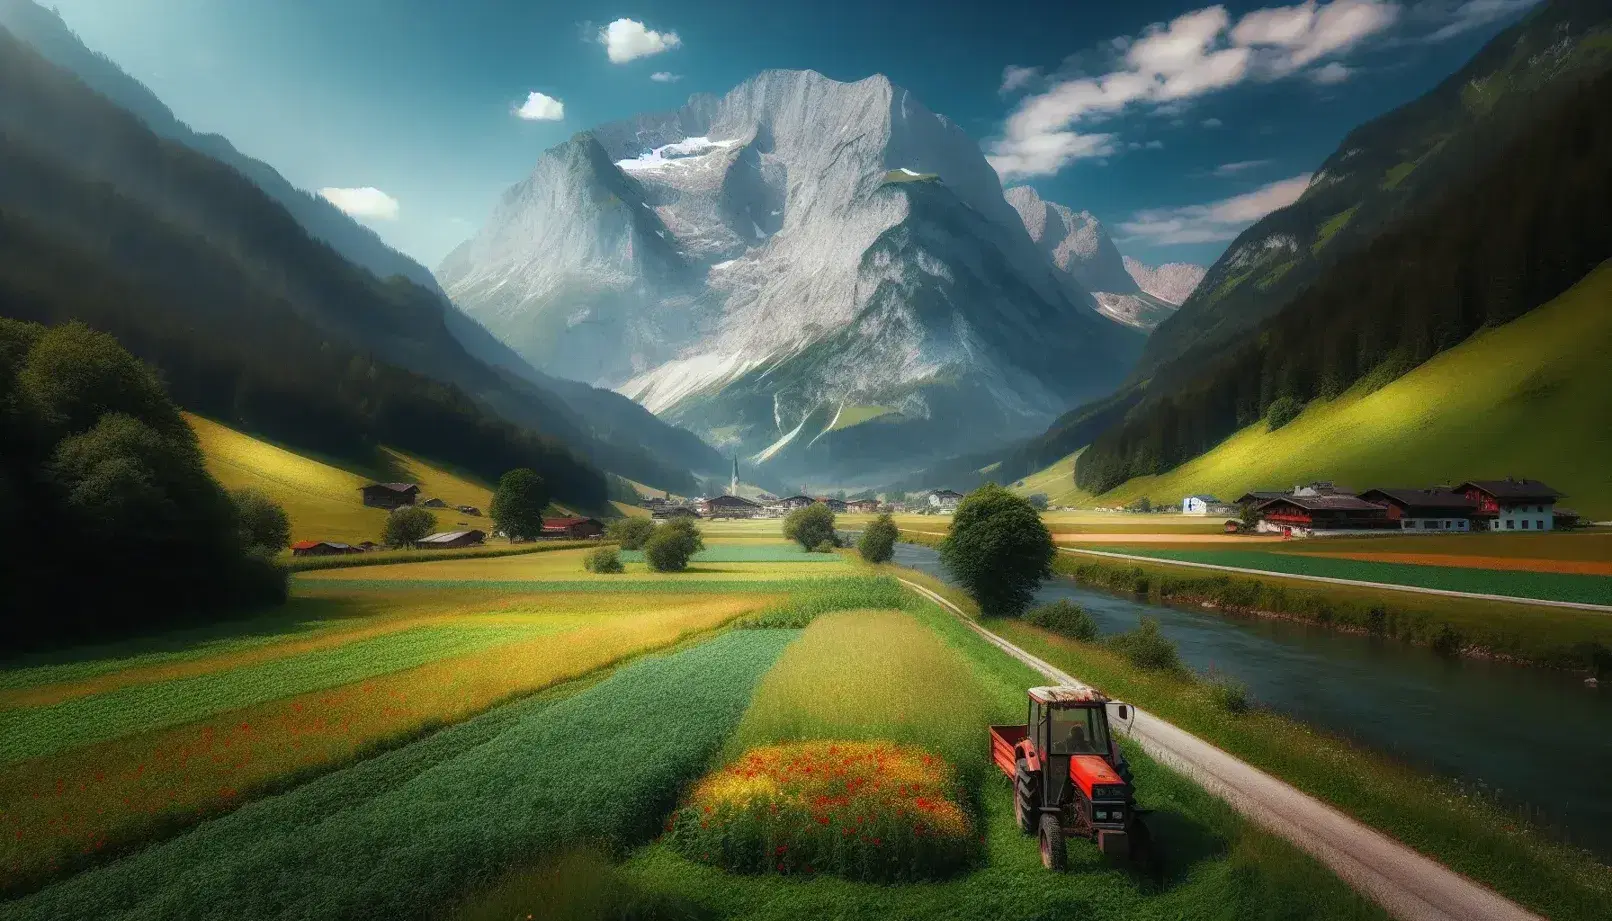 Paesaggio estivo delle Alpi Austriache con montagna innevata, campo coltivato con trattore rosso, fiume serpeggiante e insediamenti distanti.